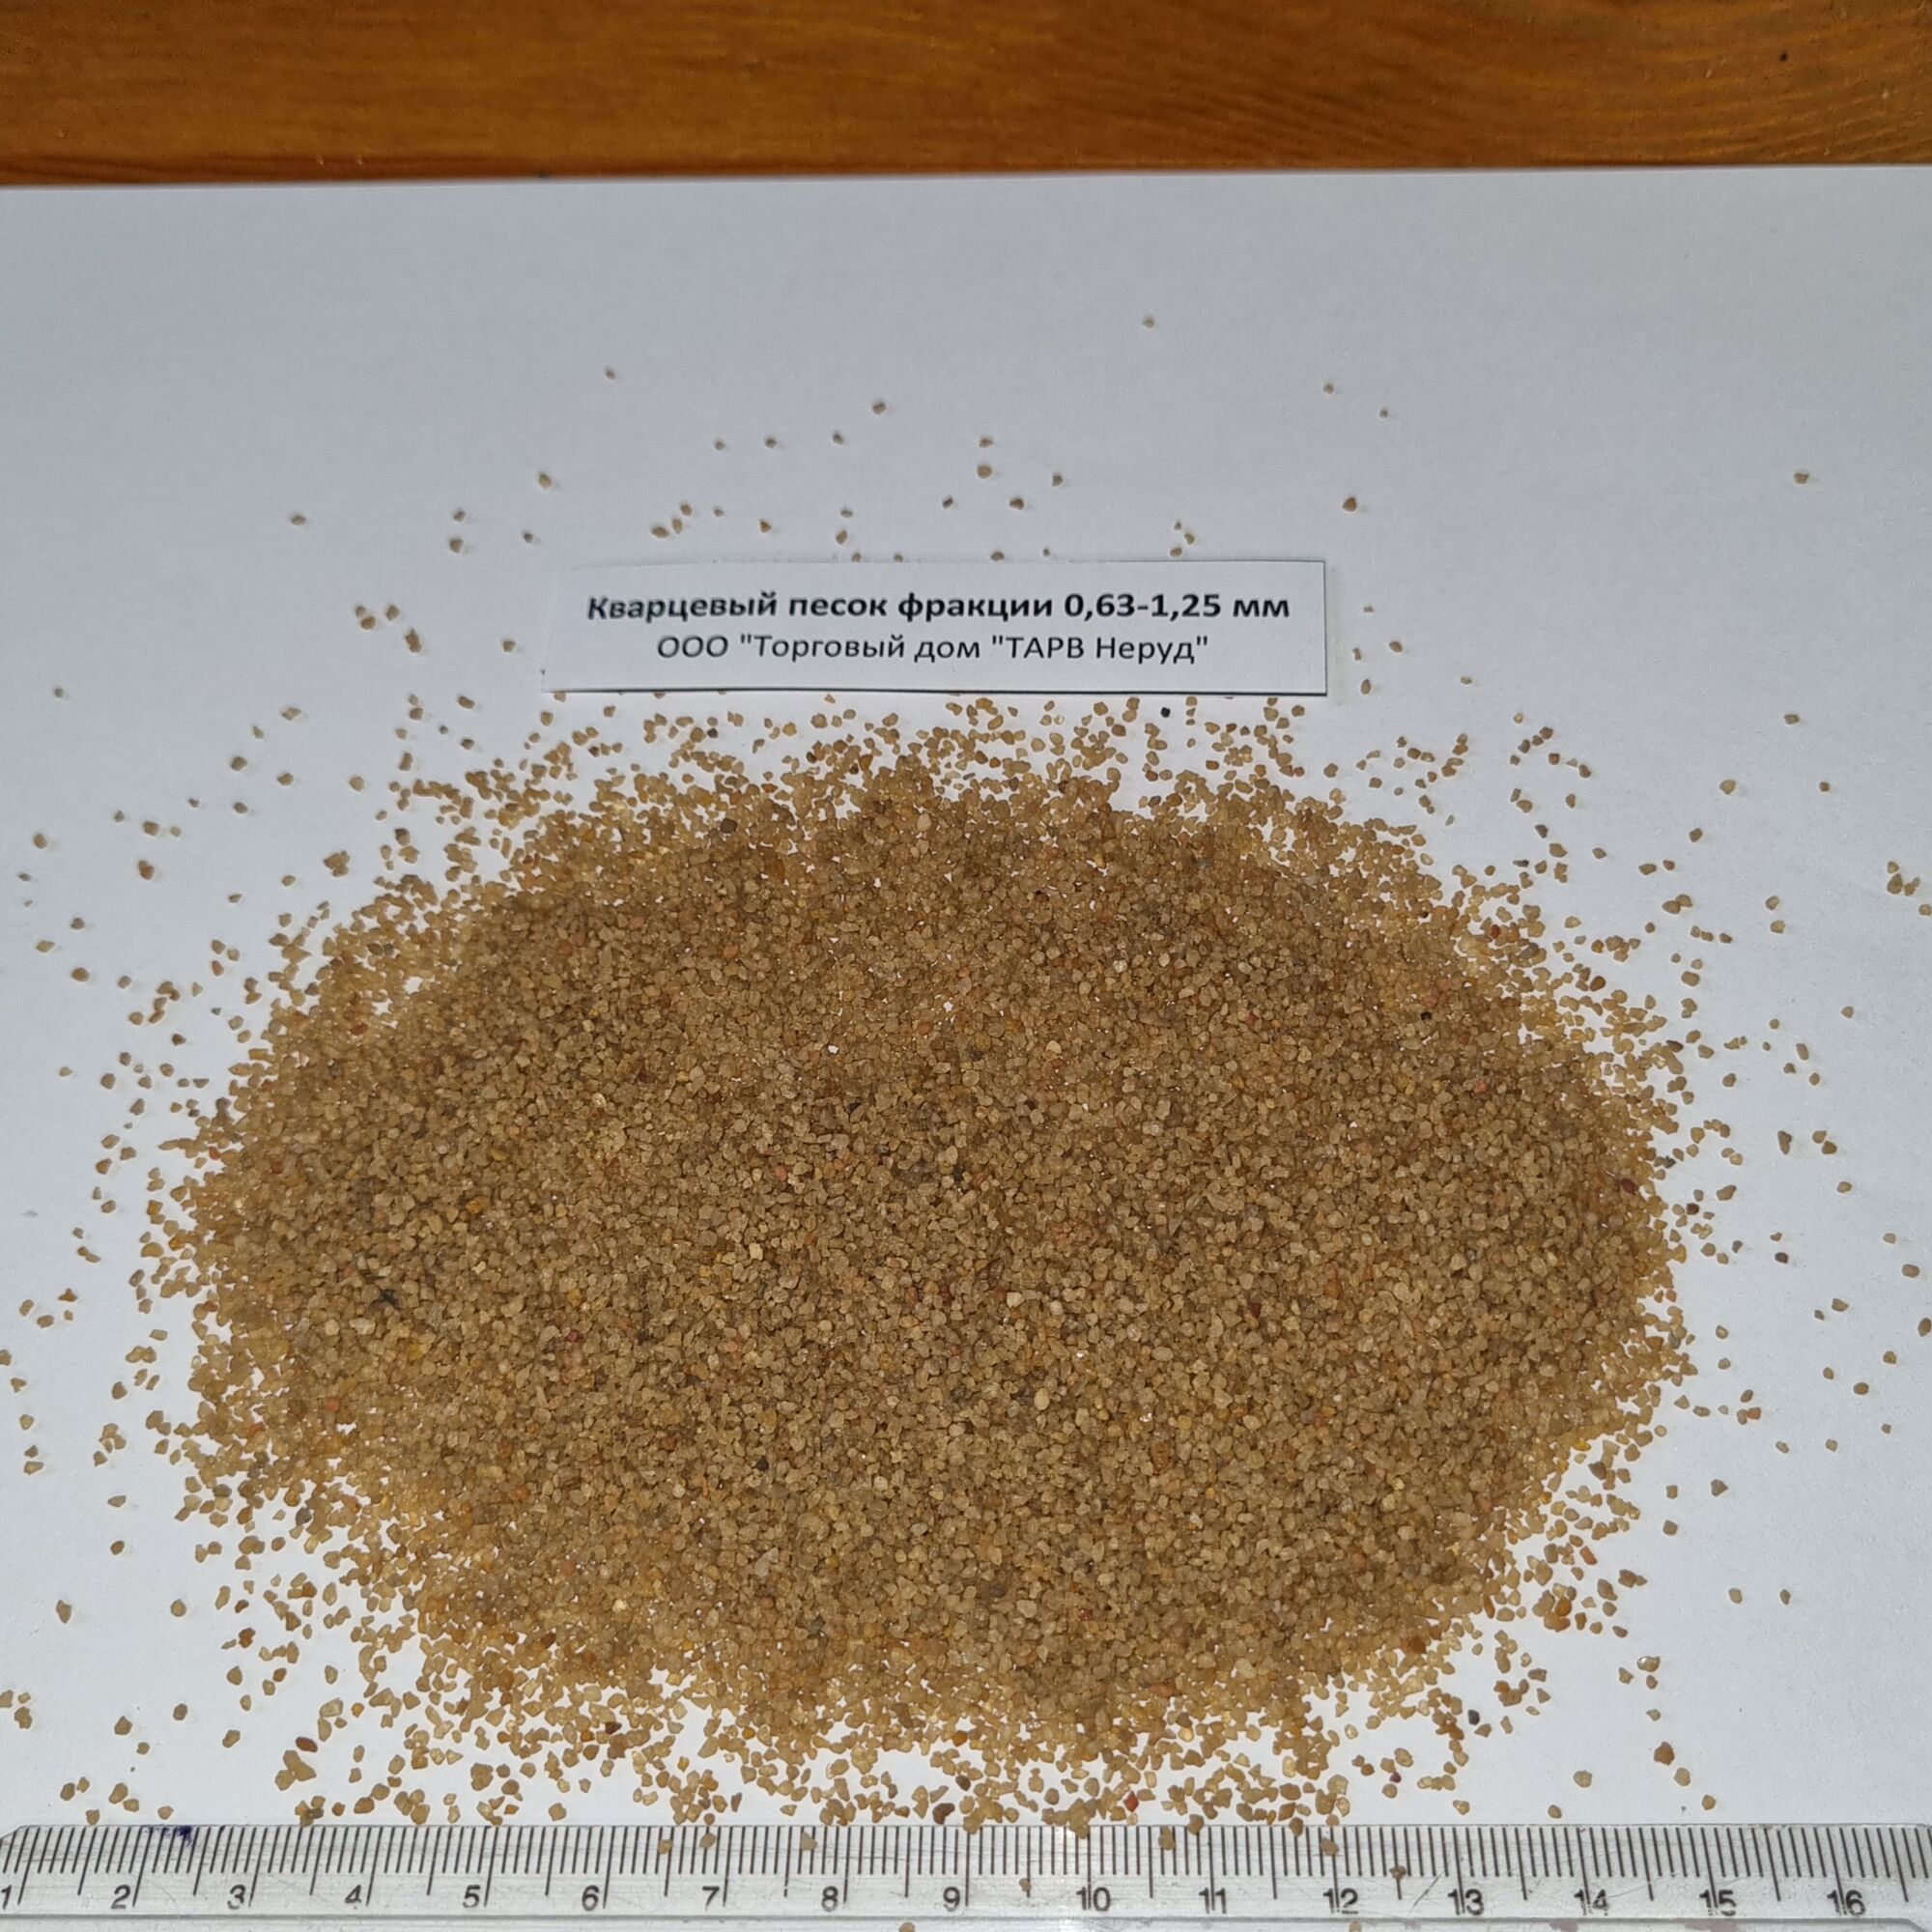 Кварцевый песок фракция 0,63-1,25 мм в биг бэгах самовывоз или доставка из Воронежа (не включена)